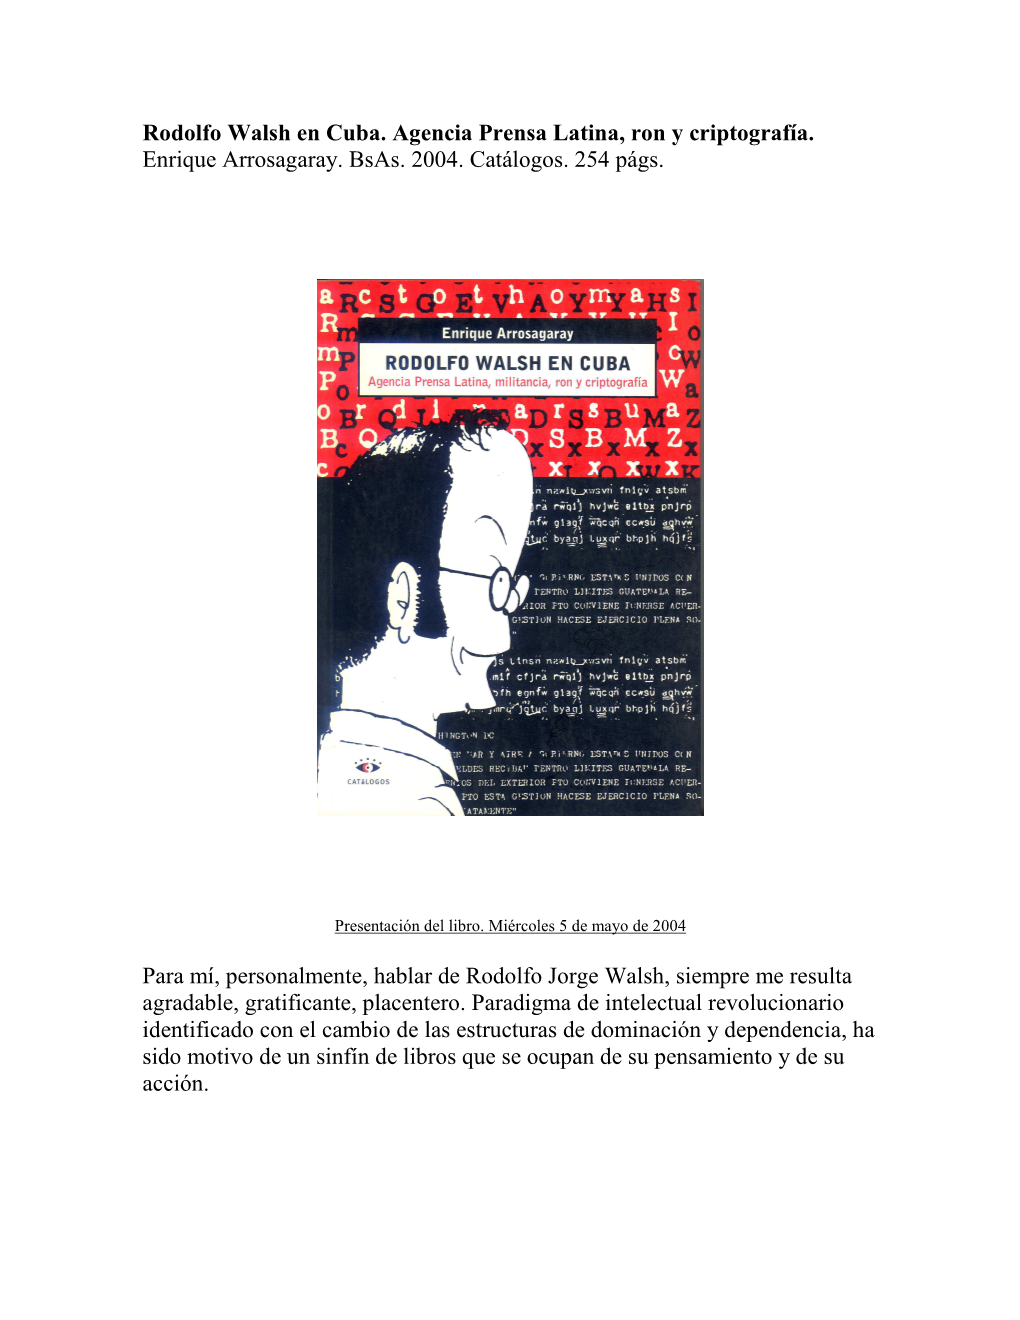 Presentación Del Libro Rodolfo Walsh En Cuba